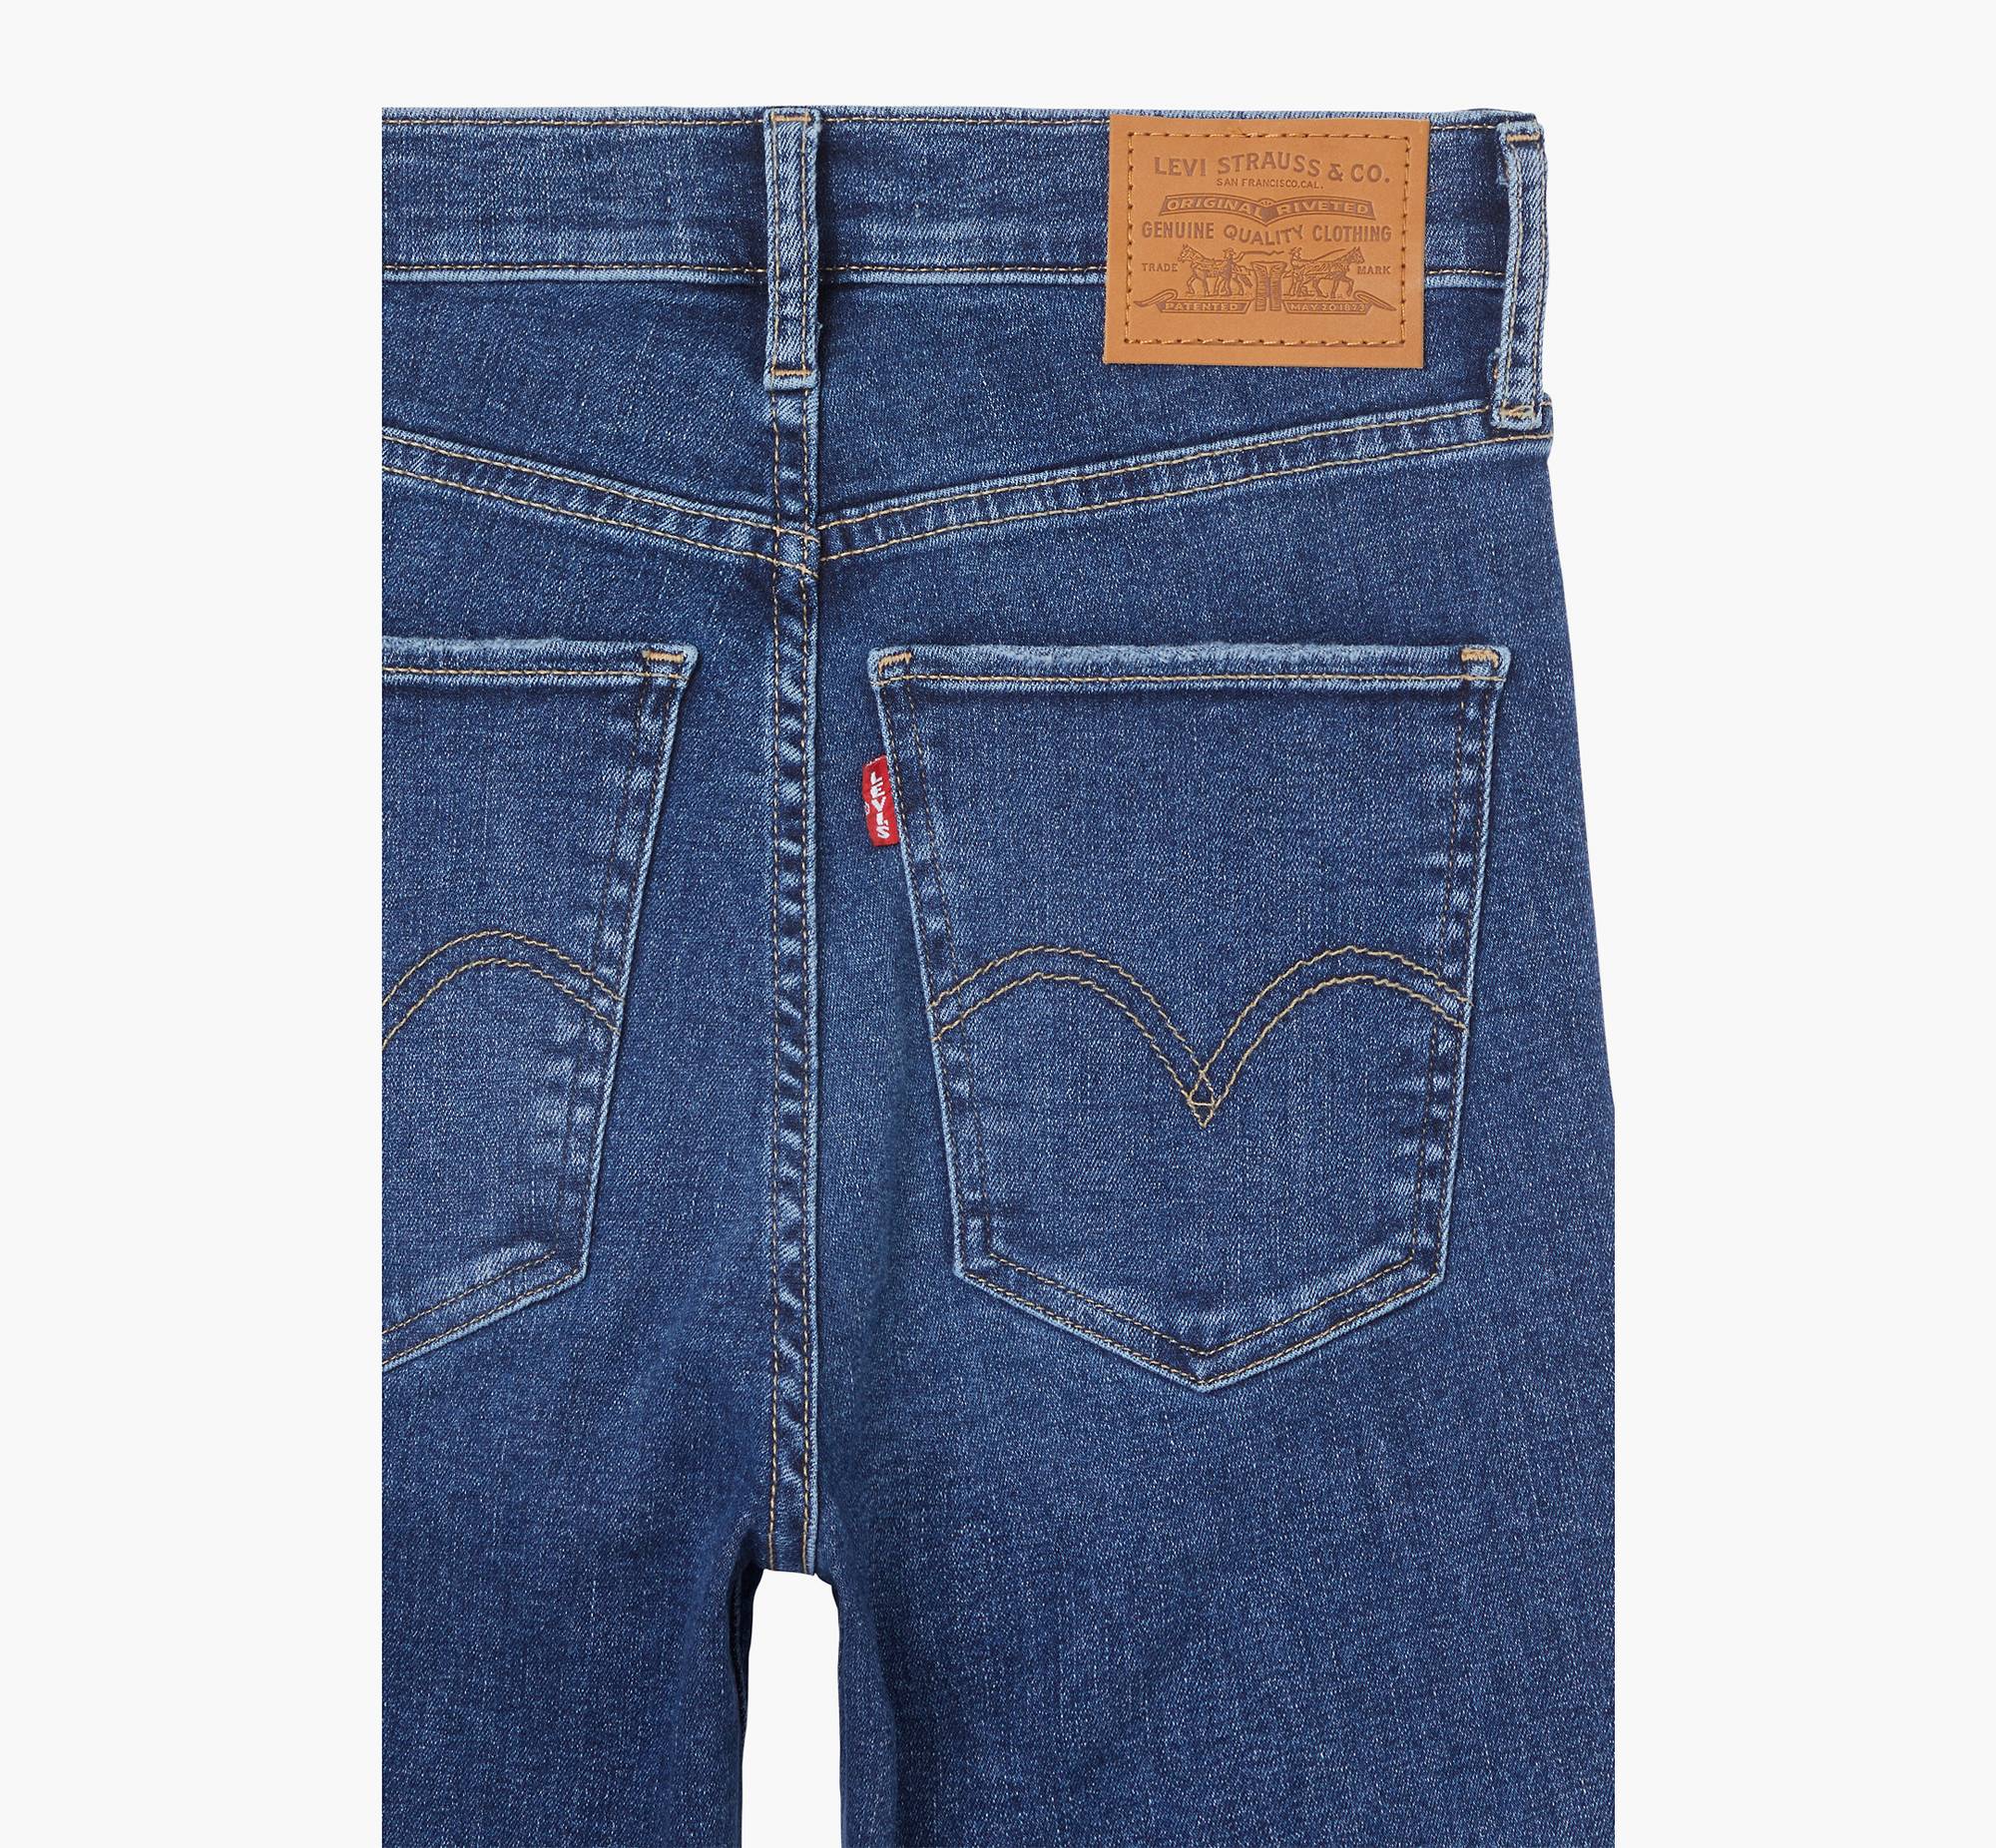 Mile High Super Skinny Jeans 8